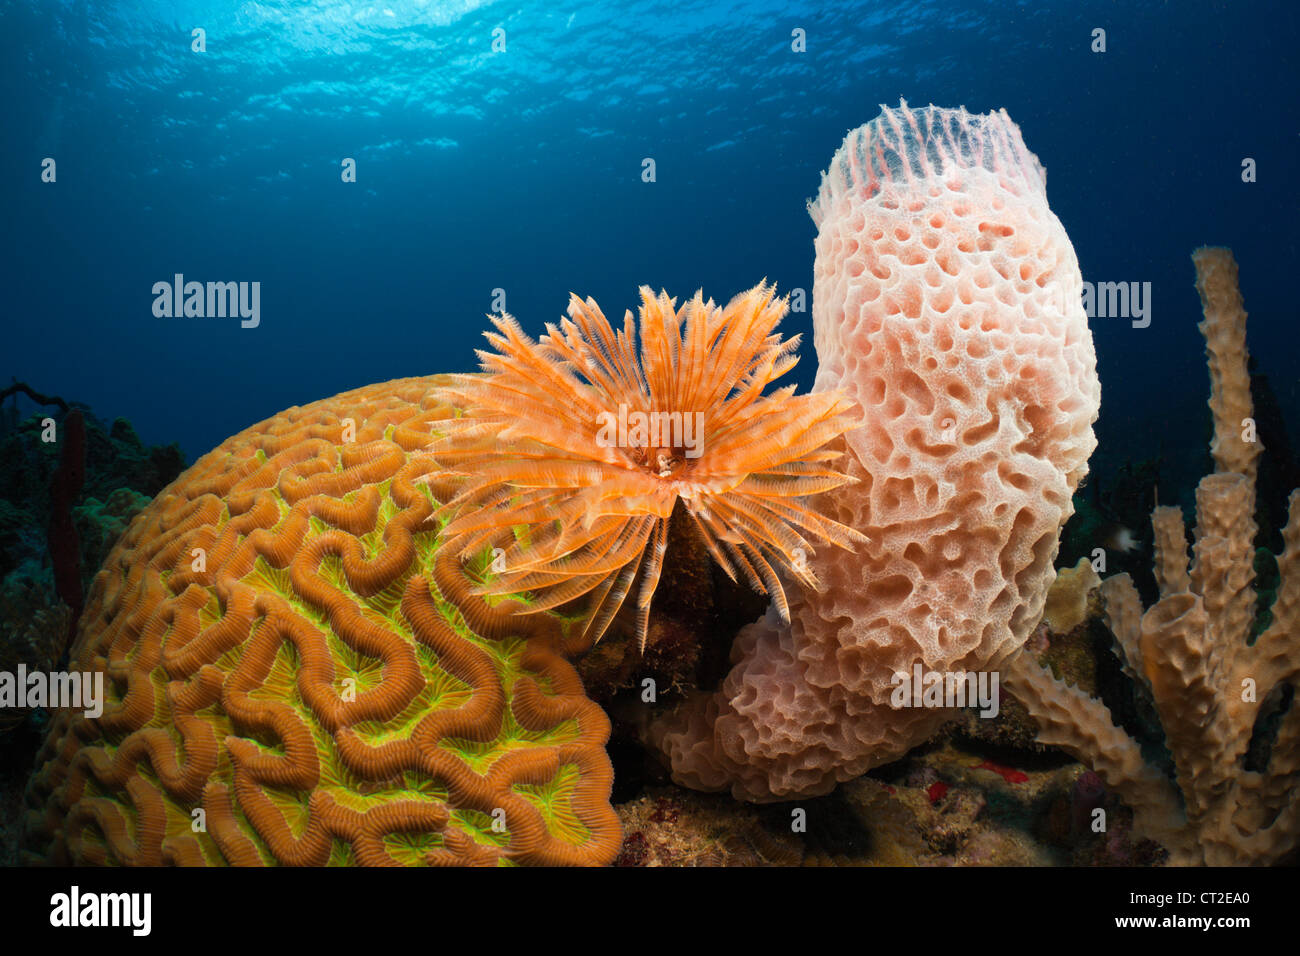 Arrecifes de Coral del Caribe, Mar Caribe Dominica Foto de stock